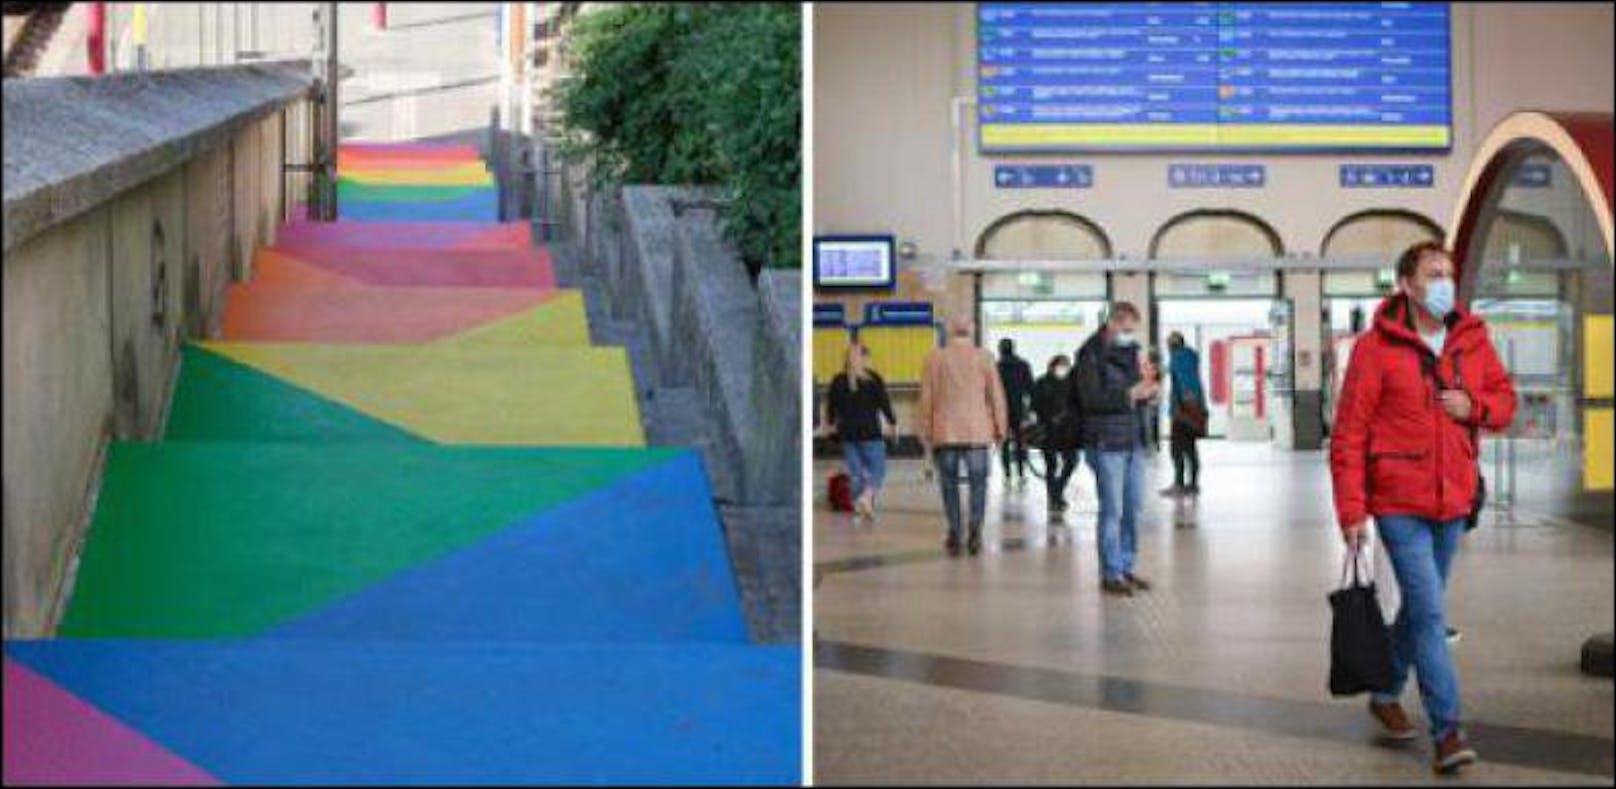 Luxemburger Bahnhofs-Stiege wird buntes Kunstwerk